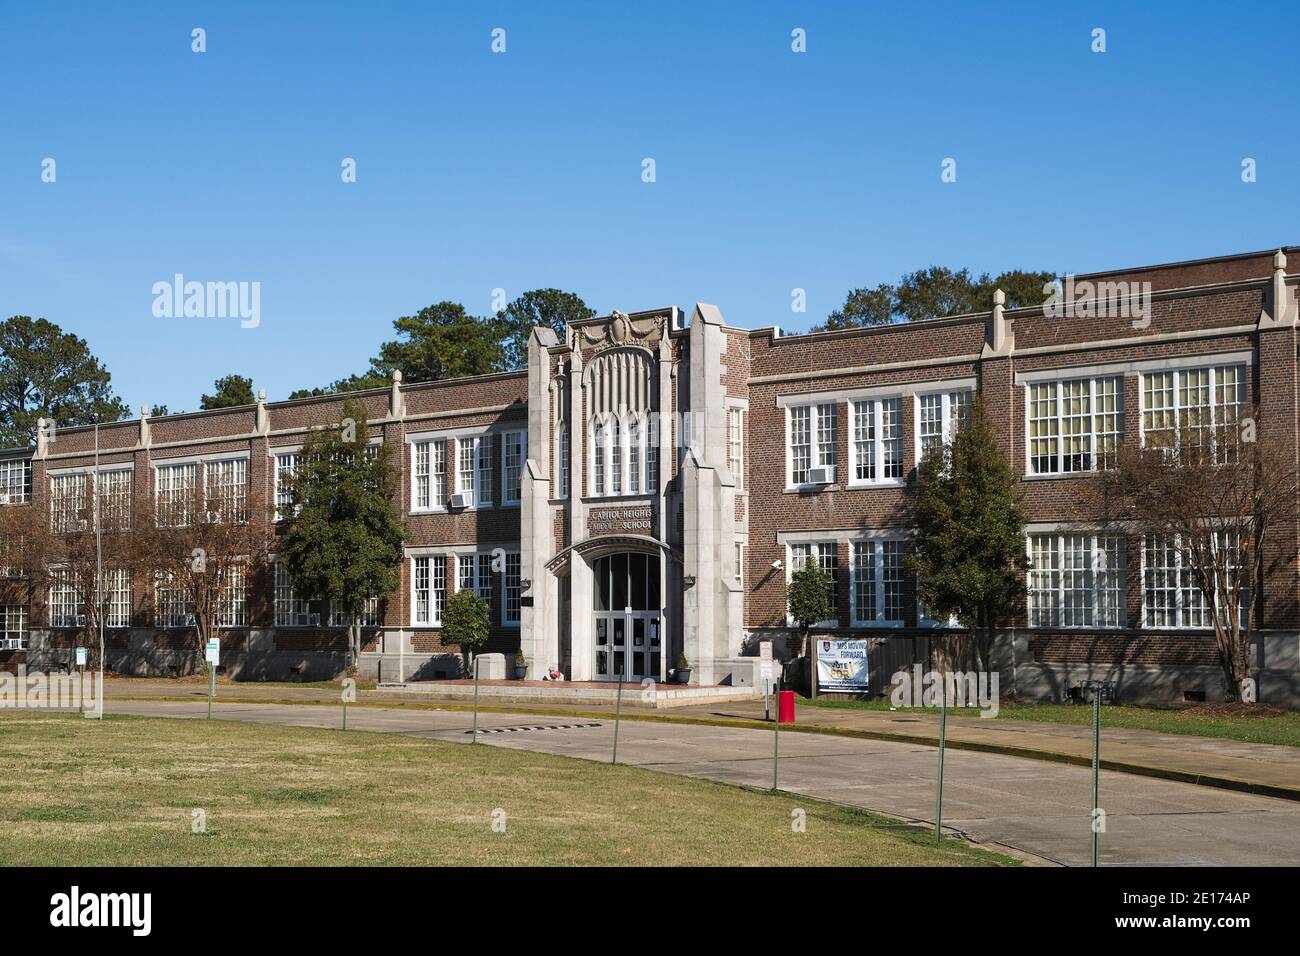 Ancien bâtiment de style années 1950 de l'école secondaire, école secondaire ou intermédiaire, secondaire junior bâtiment extérieur à Montgomery Alabama, États-Unis. Banque D'Images